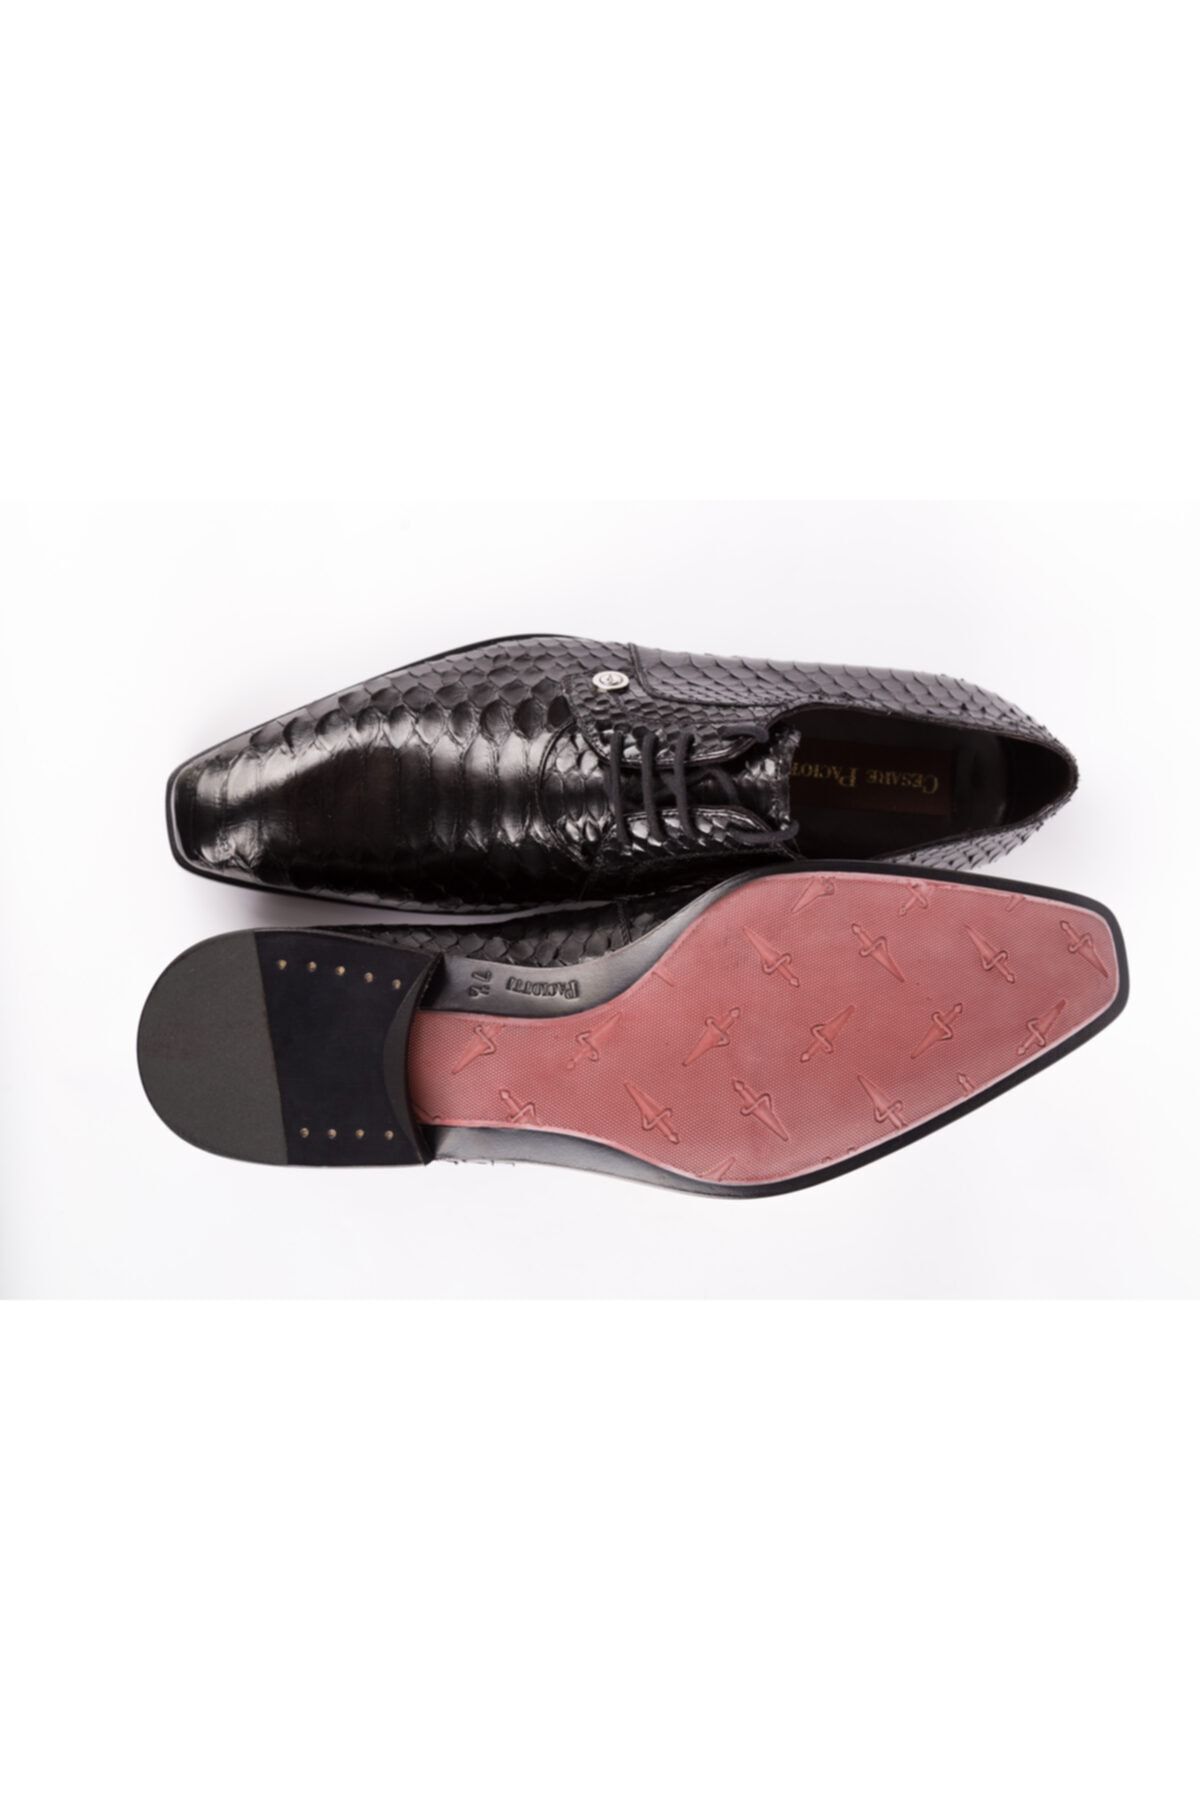 Cesare Paciotti Klasik Ayakkabı